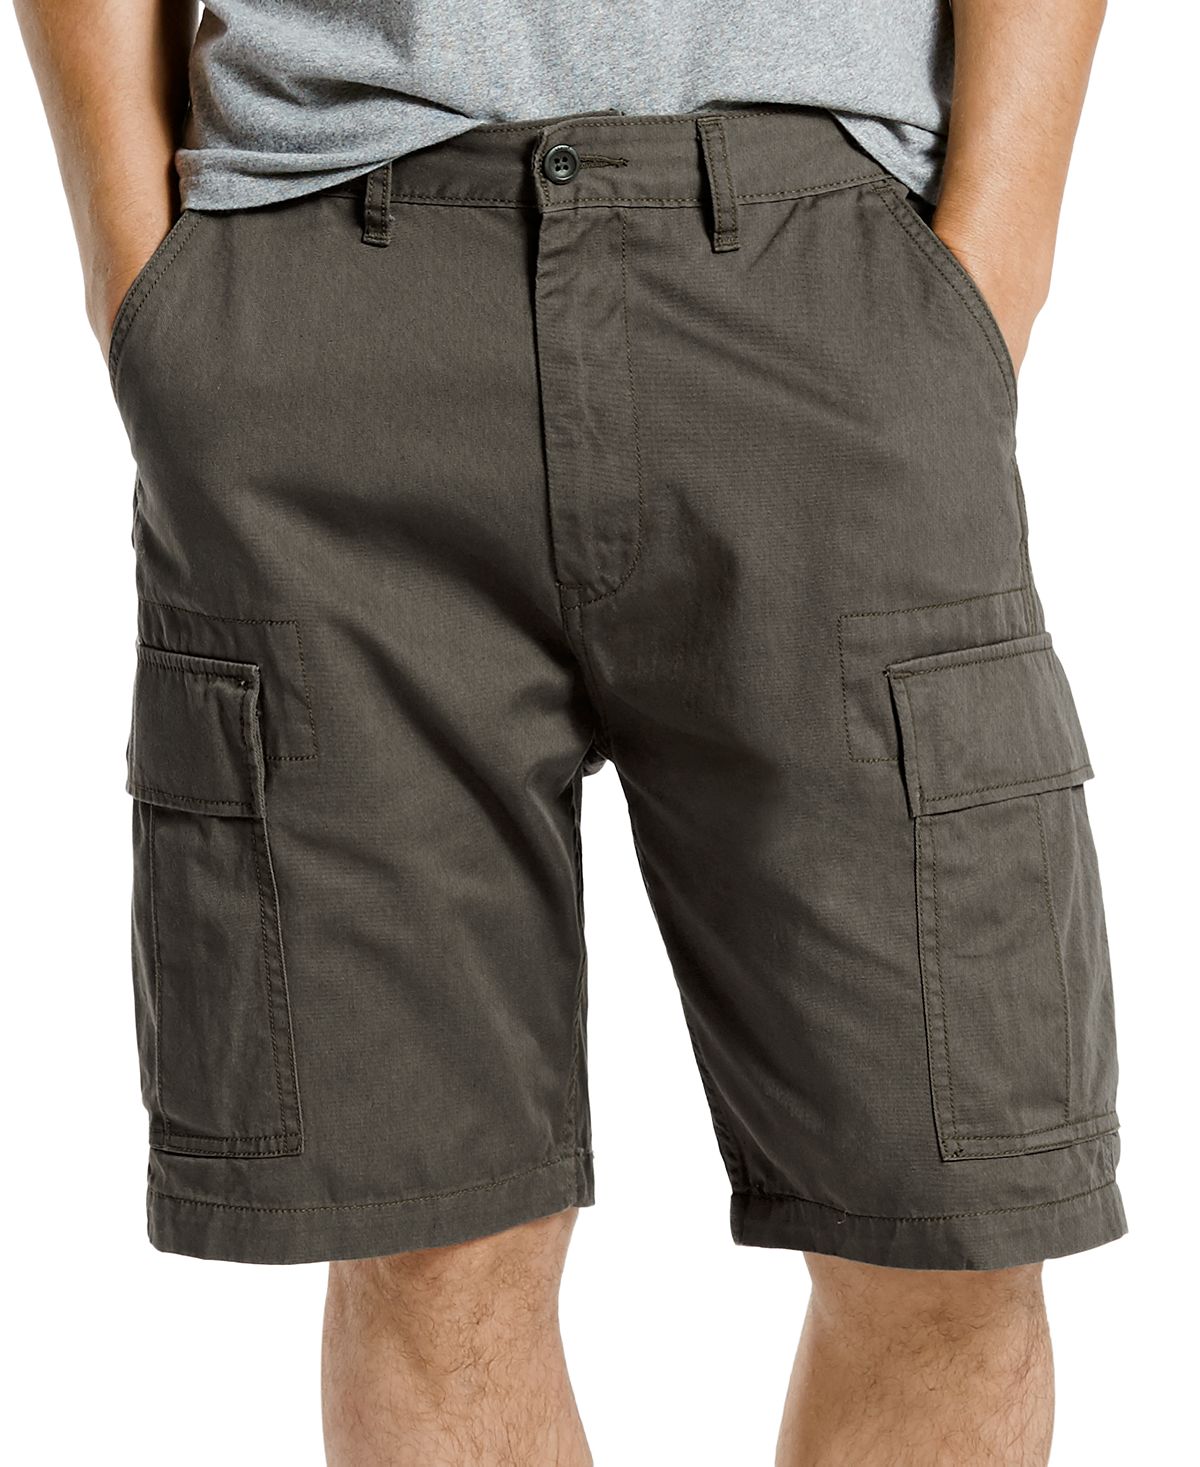 Мужские шорты-карго свободного покроя больших и высоких размеров Levi's мужские шорты карго свободного покроя из неэластичного материала шириной 9 5 дюйма levi s